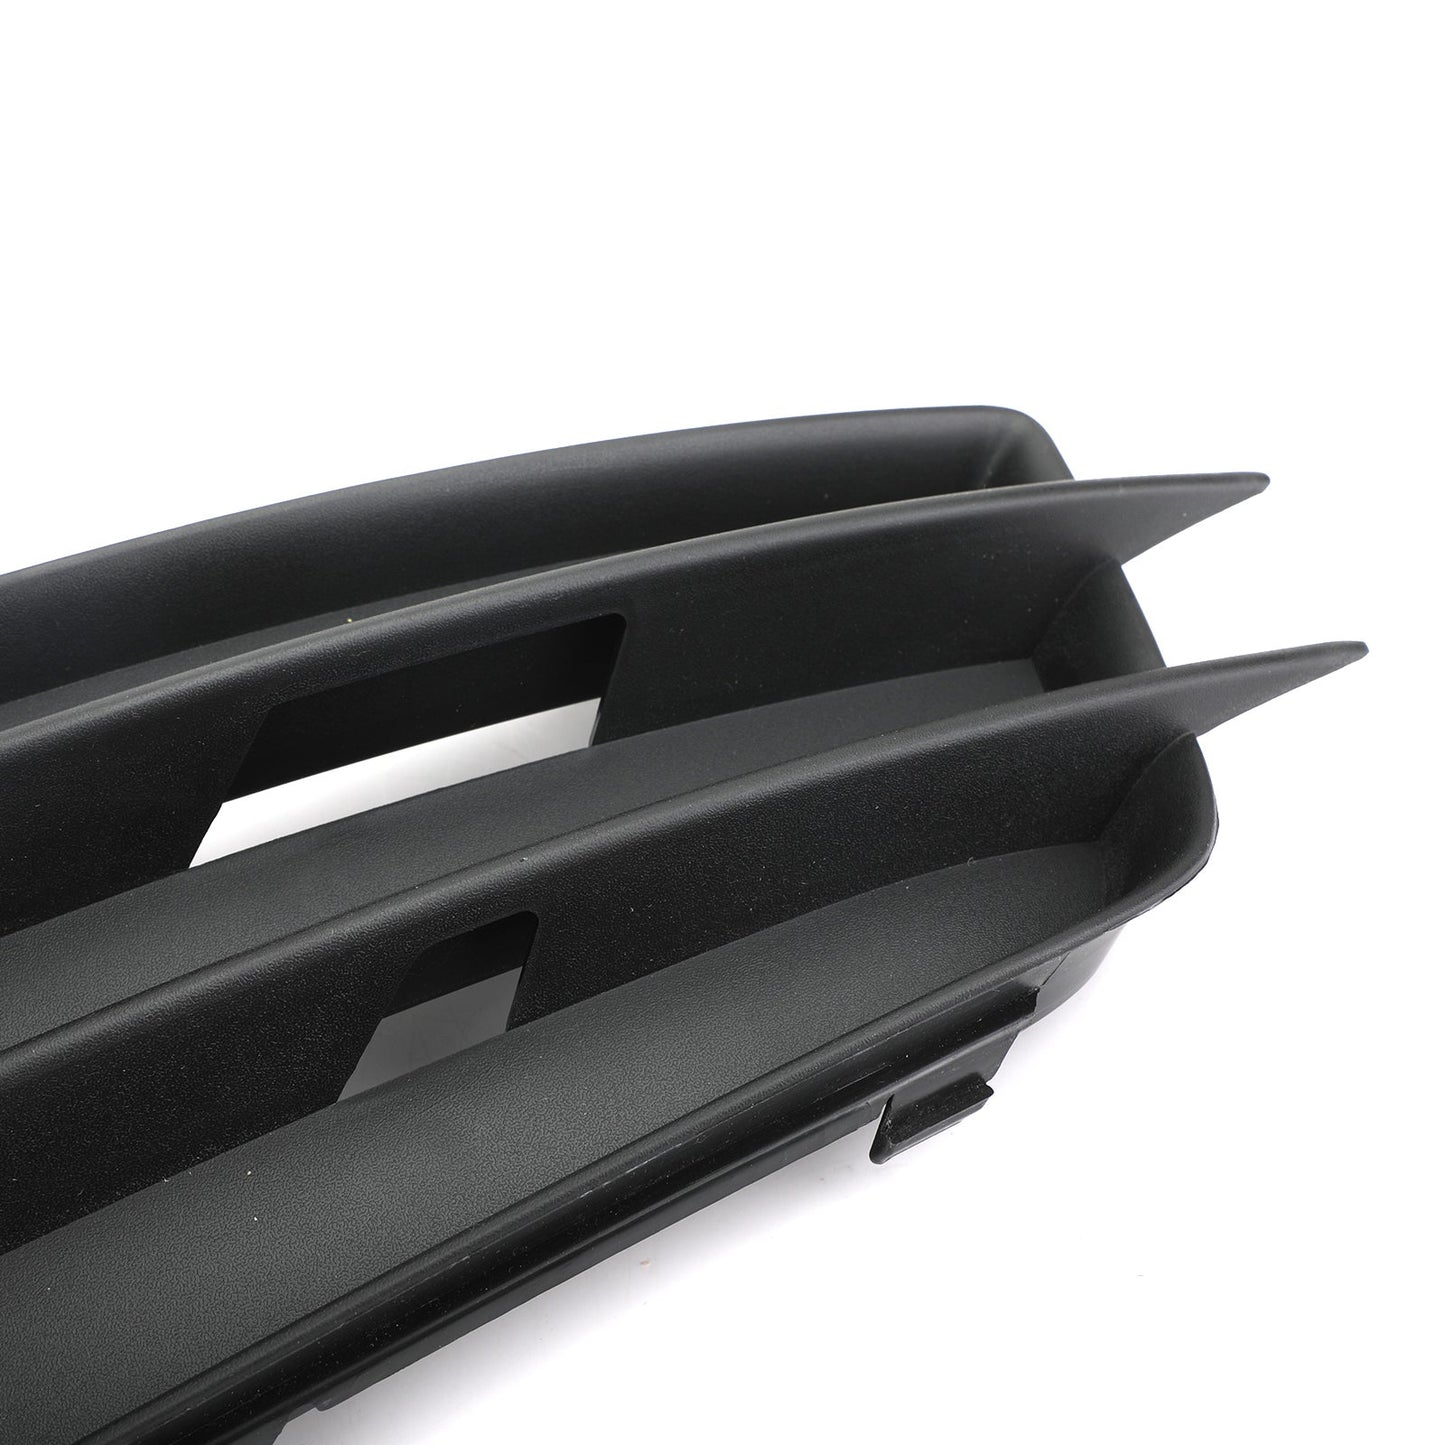 Lato sinistro nero opaco fendinebbia griglia S-Line paraurti per AUDI A4 B8 2008-2012 generico